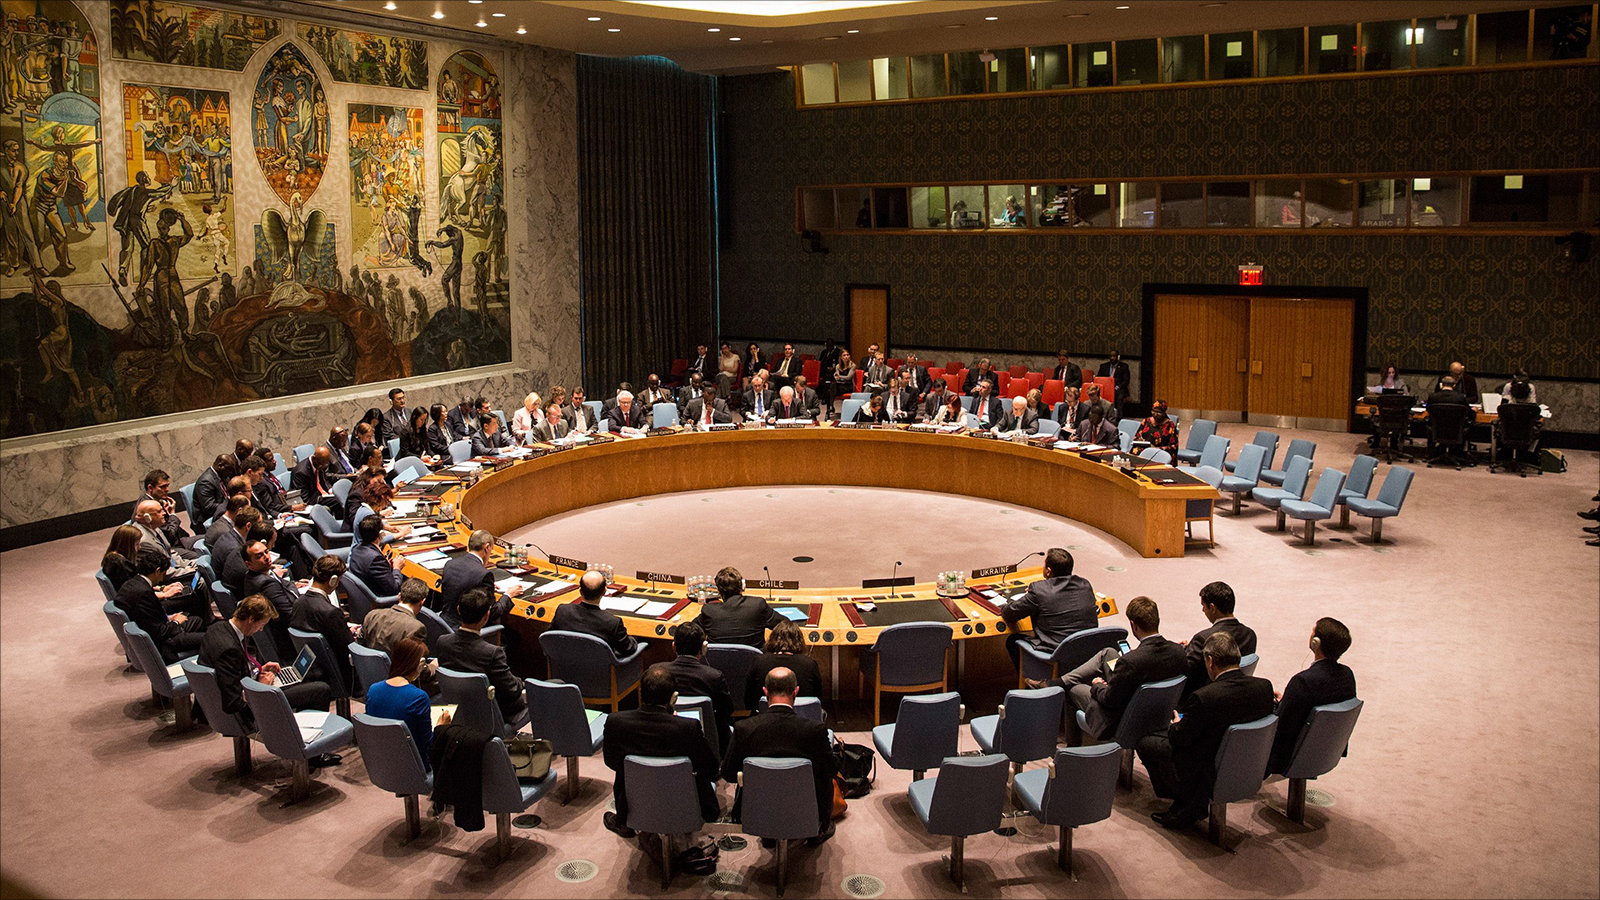   "الحرة": مجلس الأمن يعقد جلسة علنية بشأن الوضع في سوريا